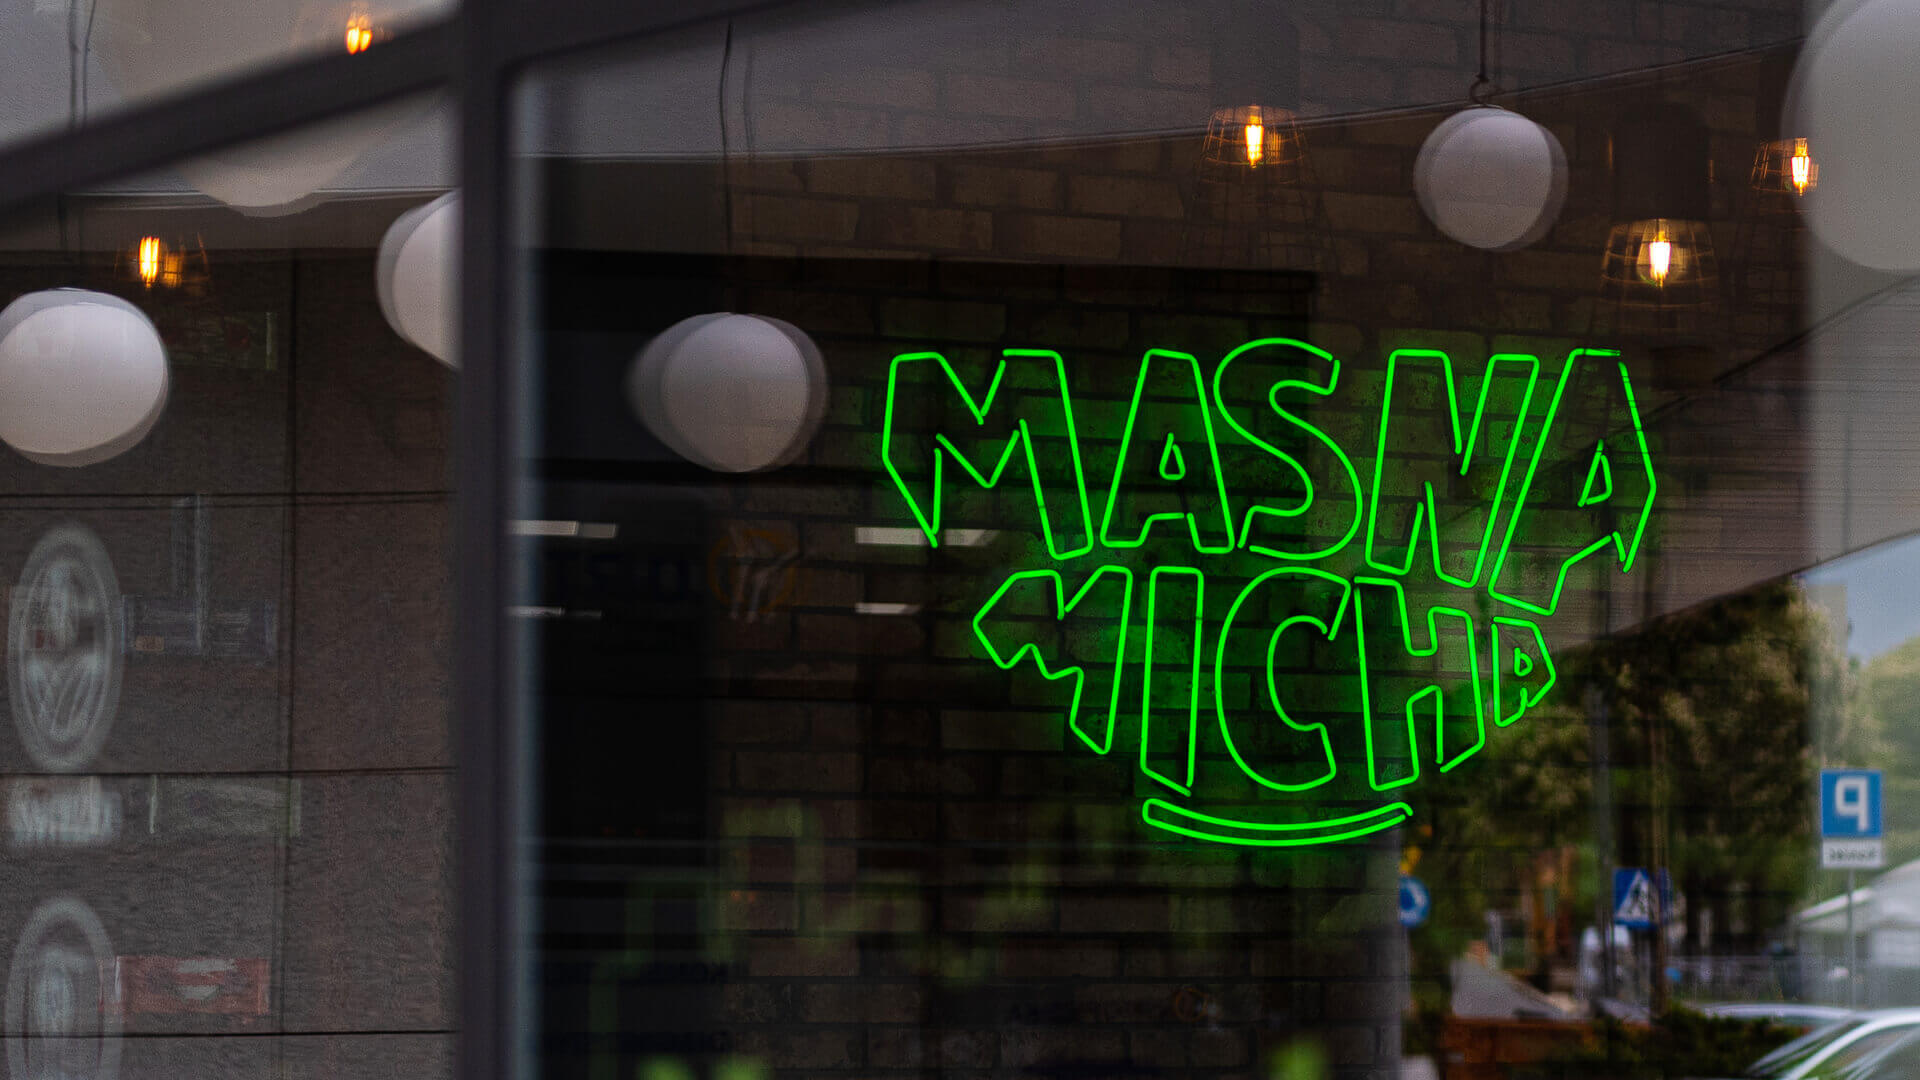 Masna Micha - Cartel de neón del restaurante Masna Micha en Gdansk, en el interior del local.